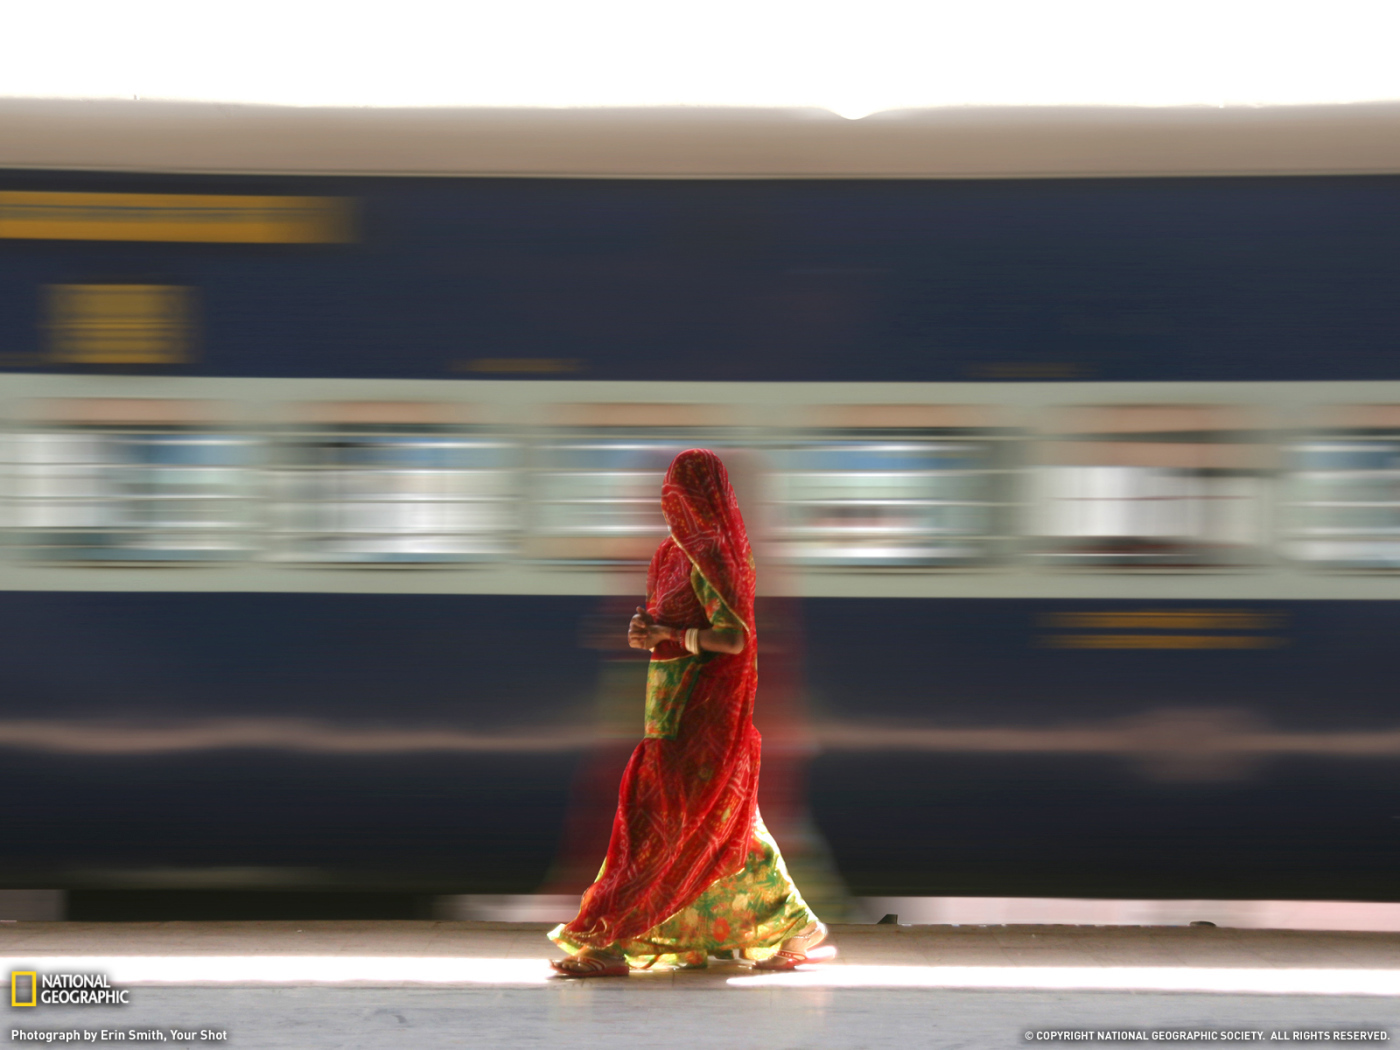 Индианка и поезд